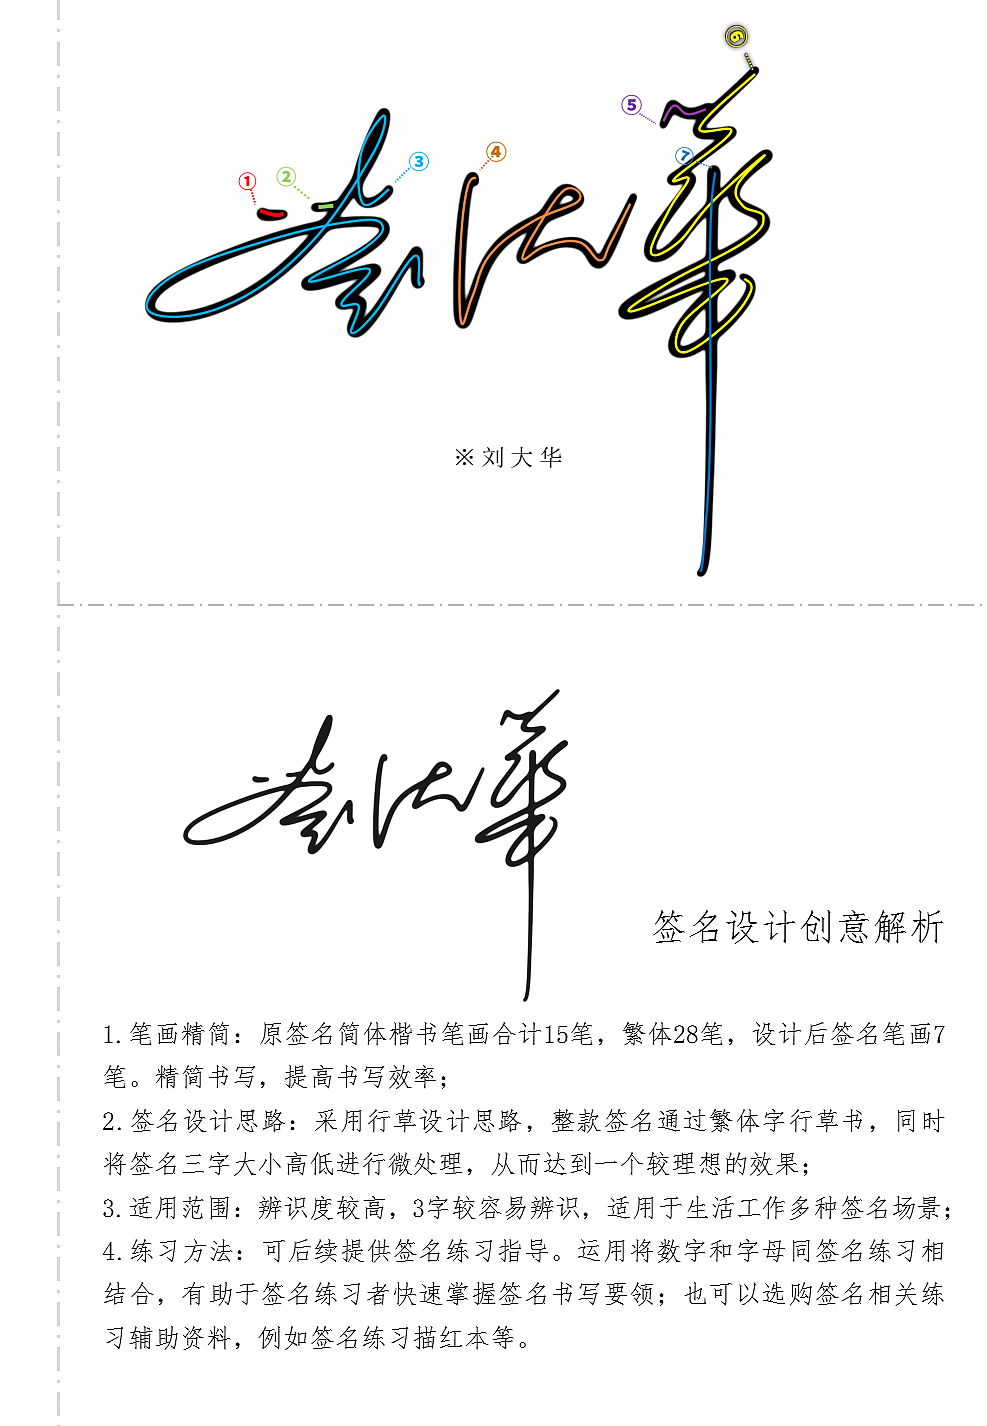 艺术签名设计解析案列丨南京孙老师丨syomei署名设计